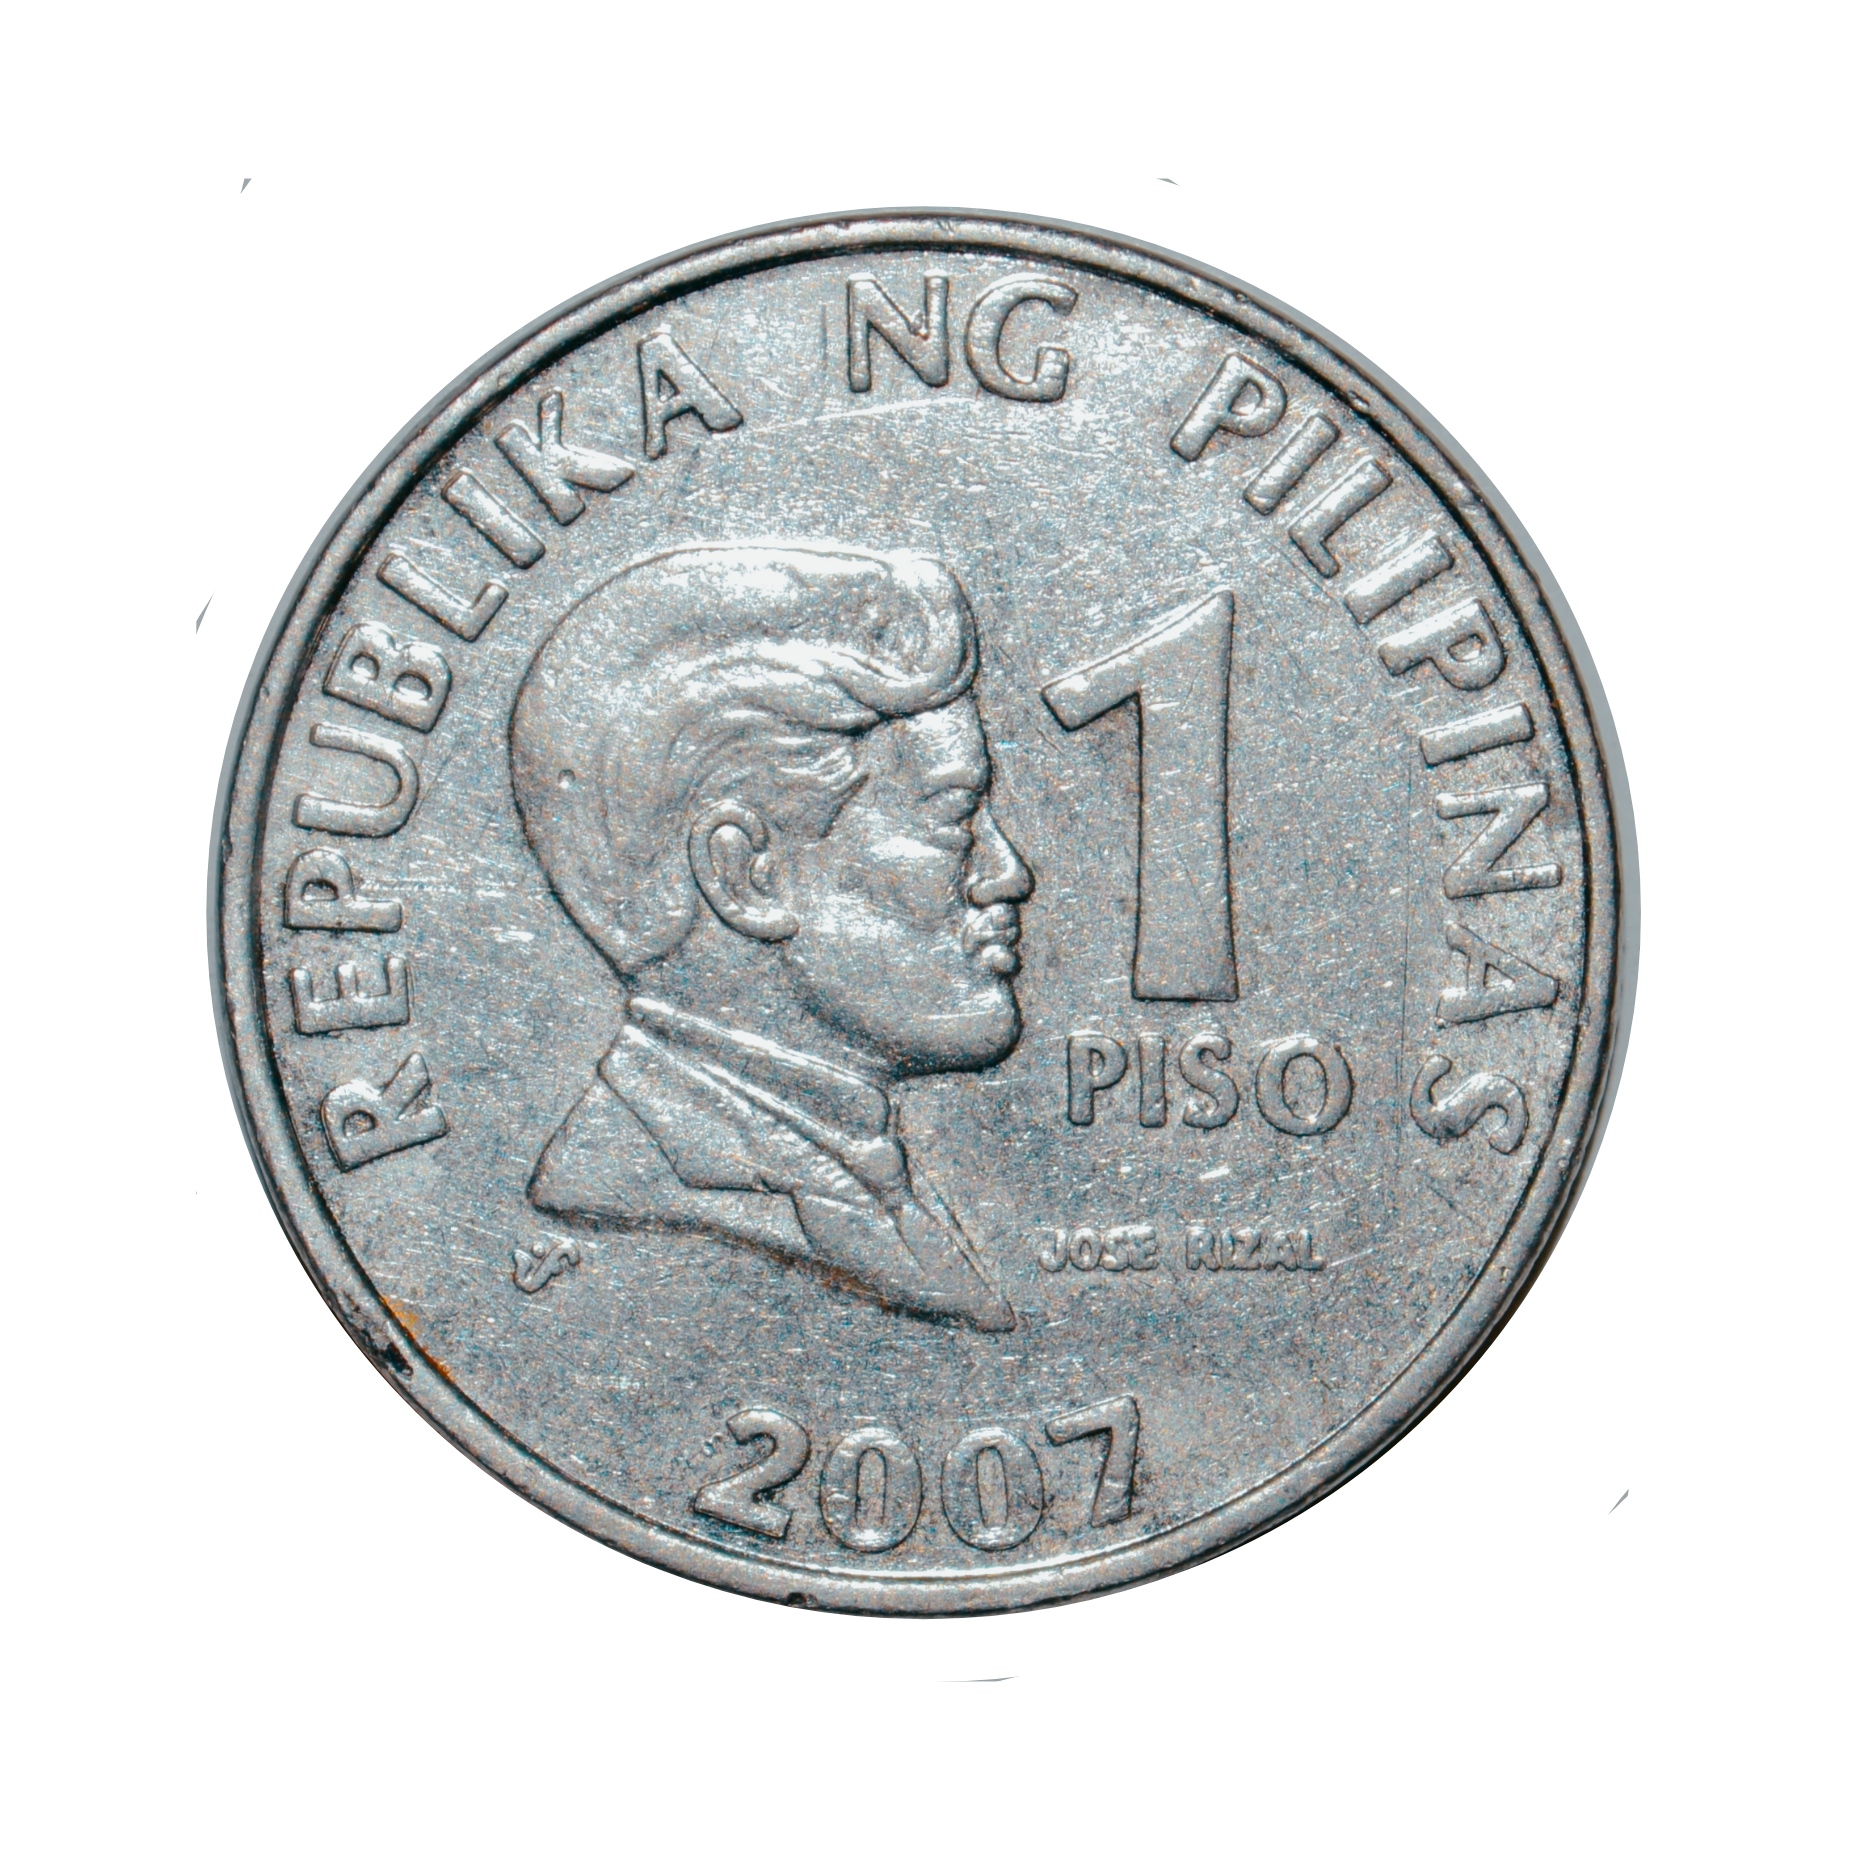 سکه تزیینی طرح کشور فیلیپین مدل یک پزو 2007 میلادی